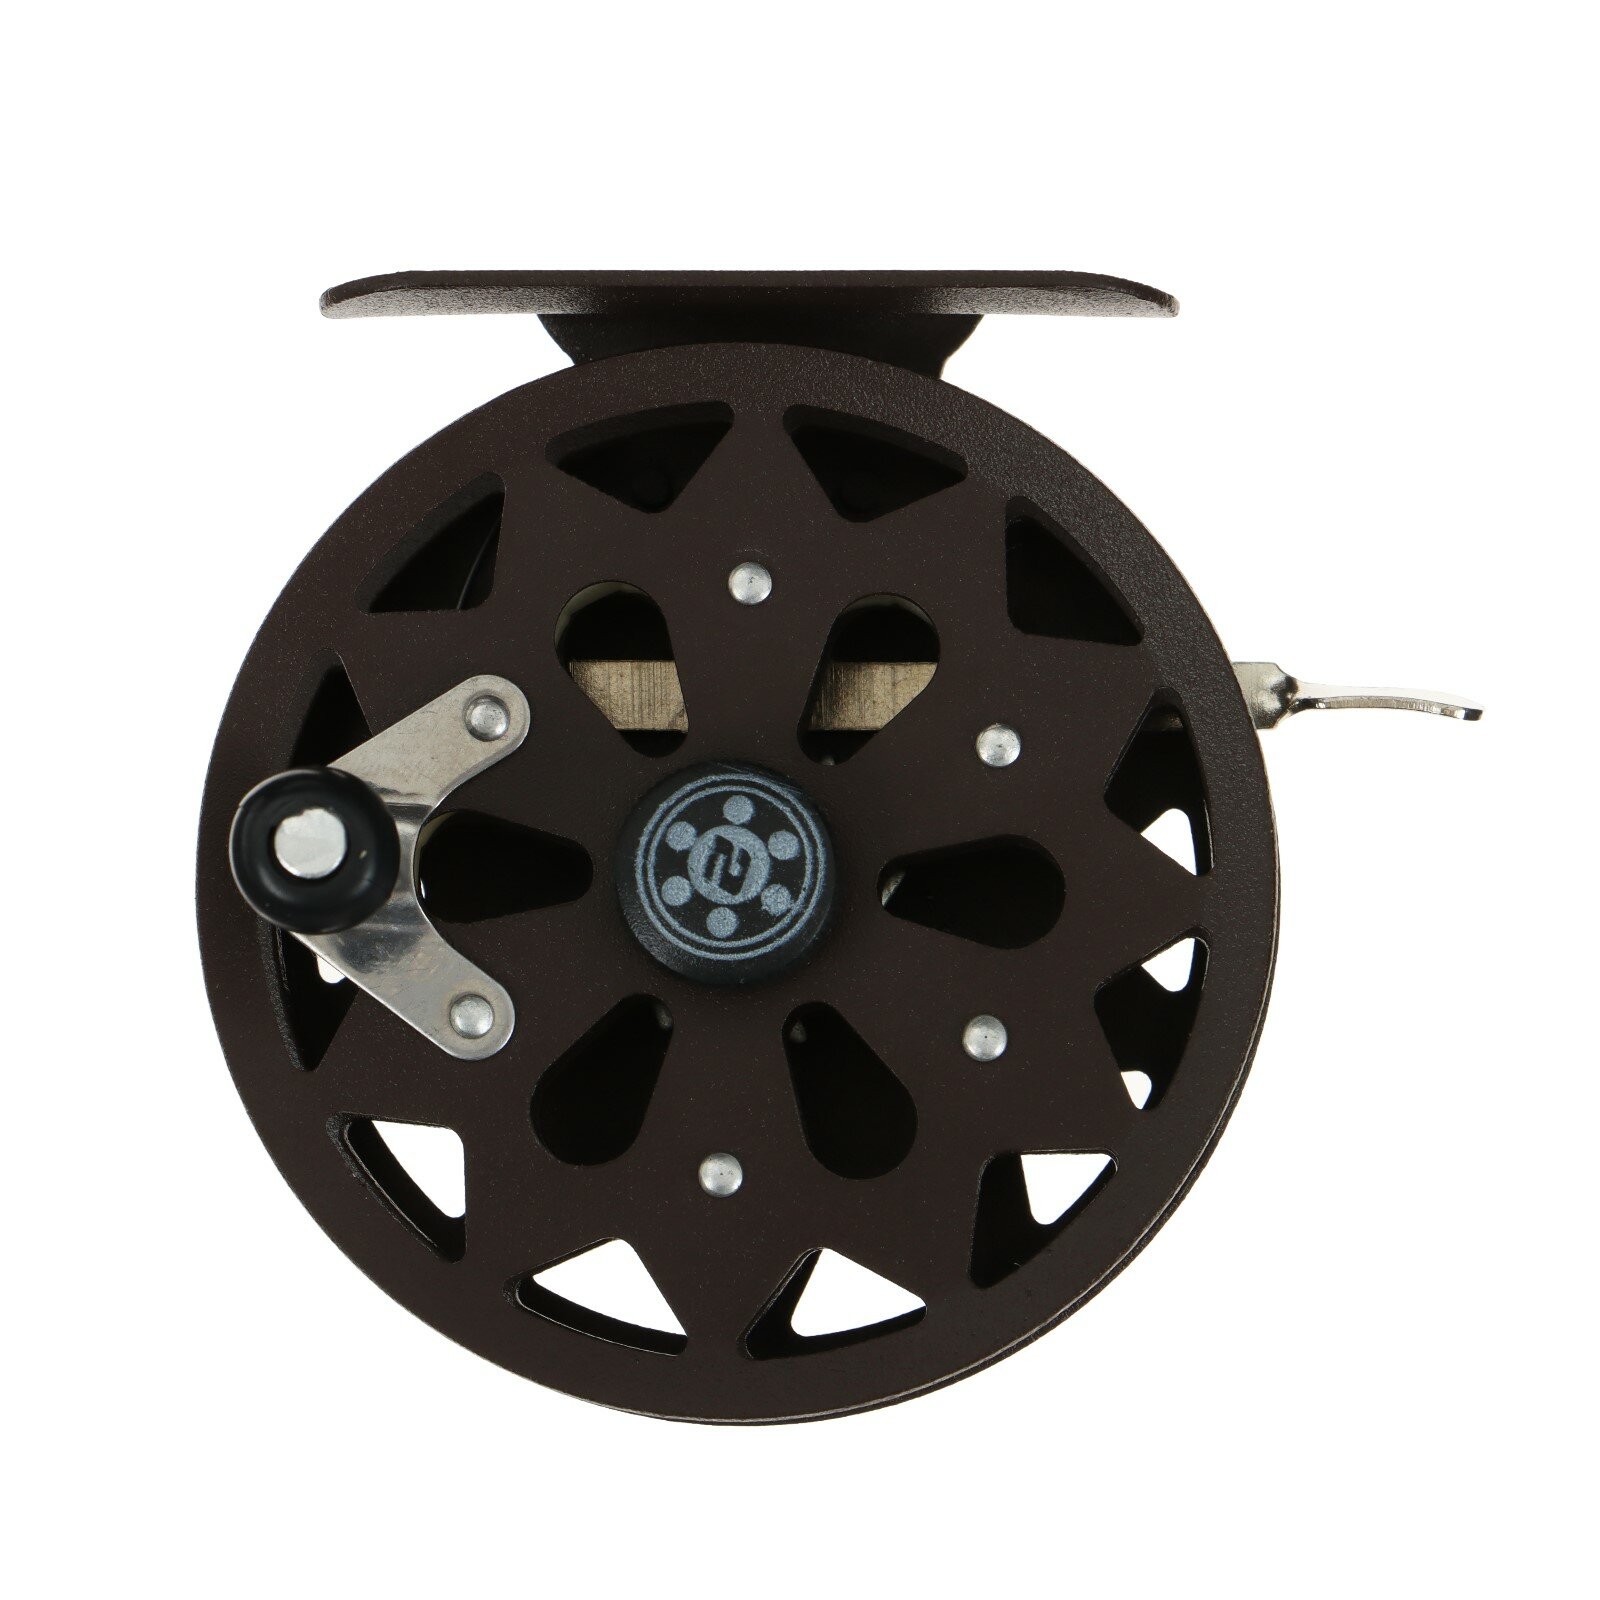 Катушка инерционная металл 2 подшипника диаметр 7.5 см цвет коричневый TL75A 9913093